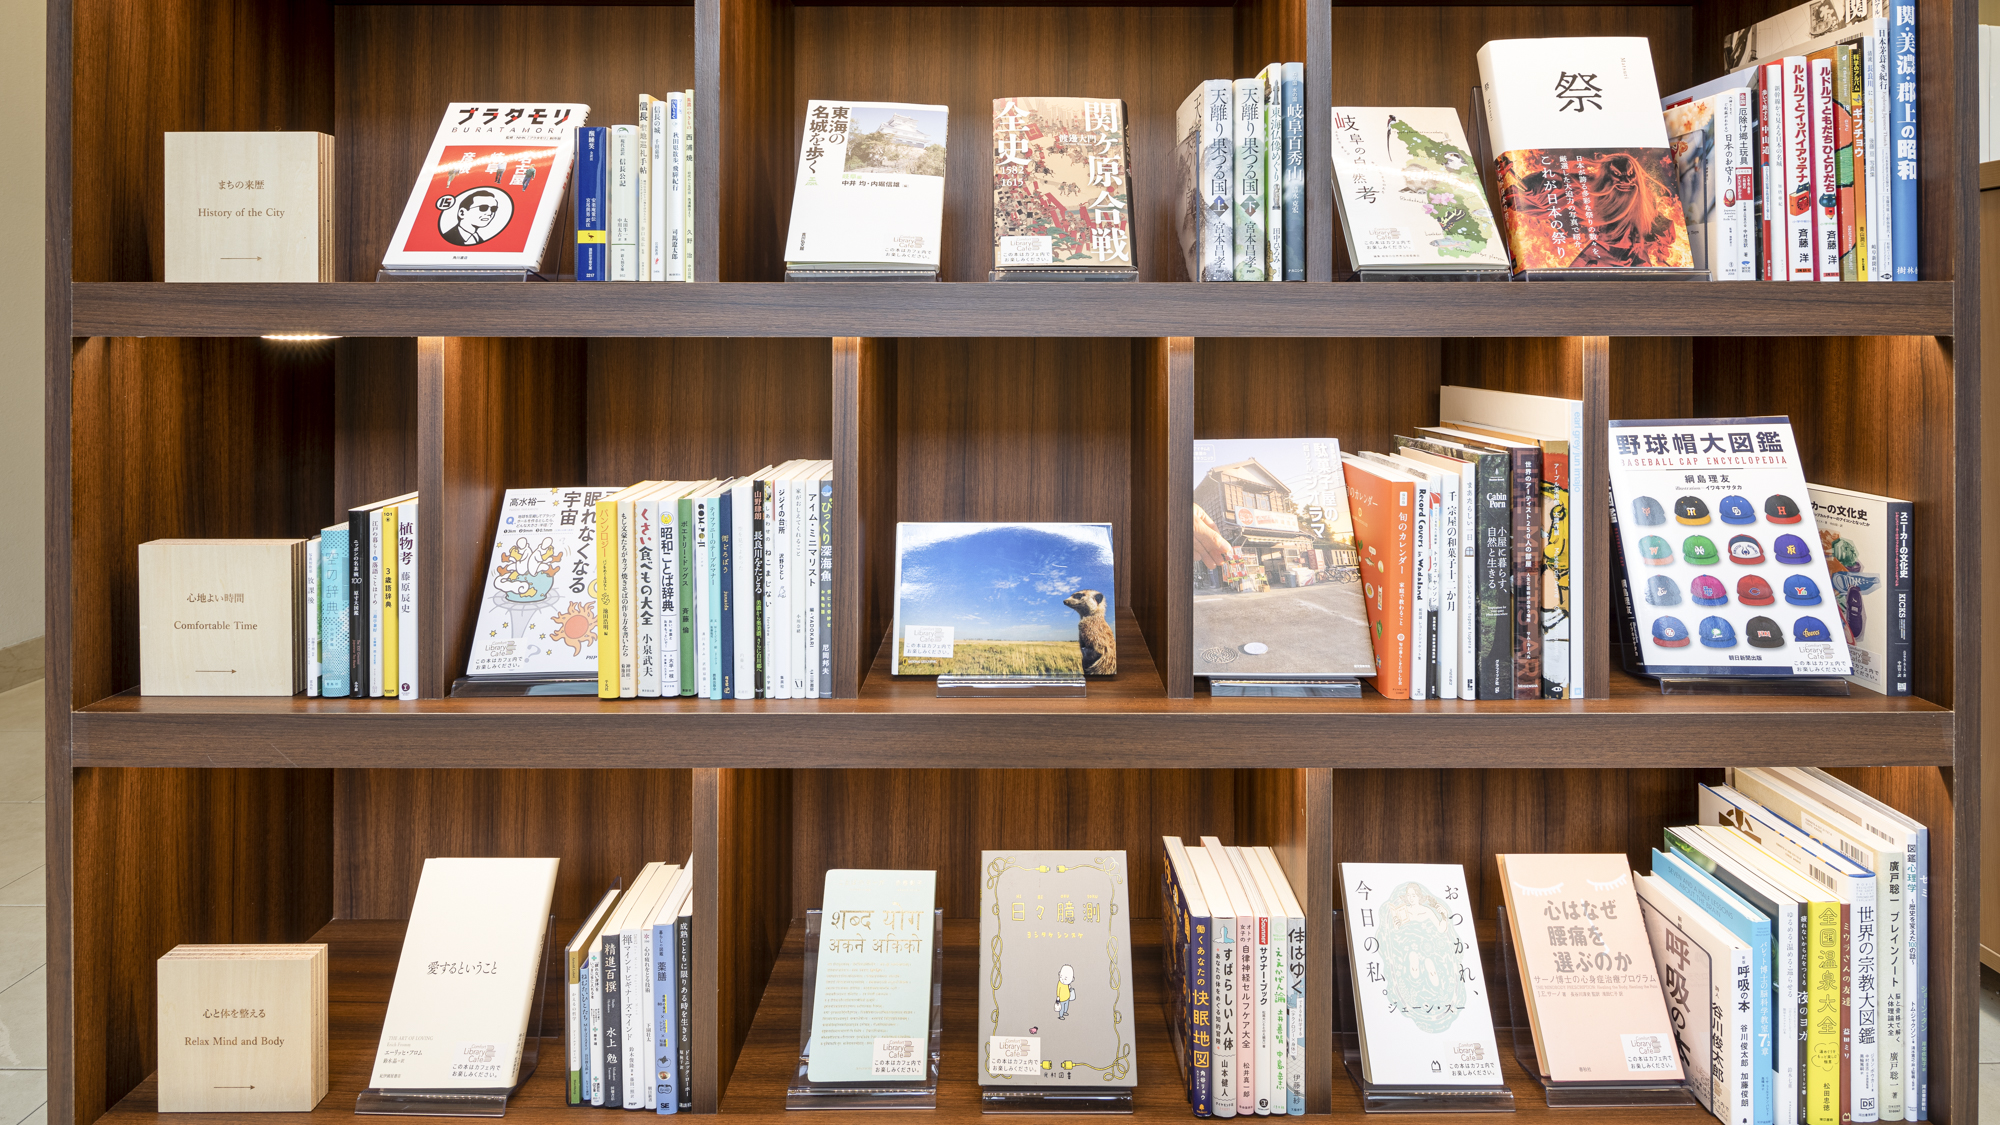 【ライブラリーカフェ】カフェ内には岐阜にまつわる本が100冊以上